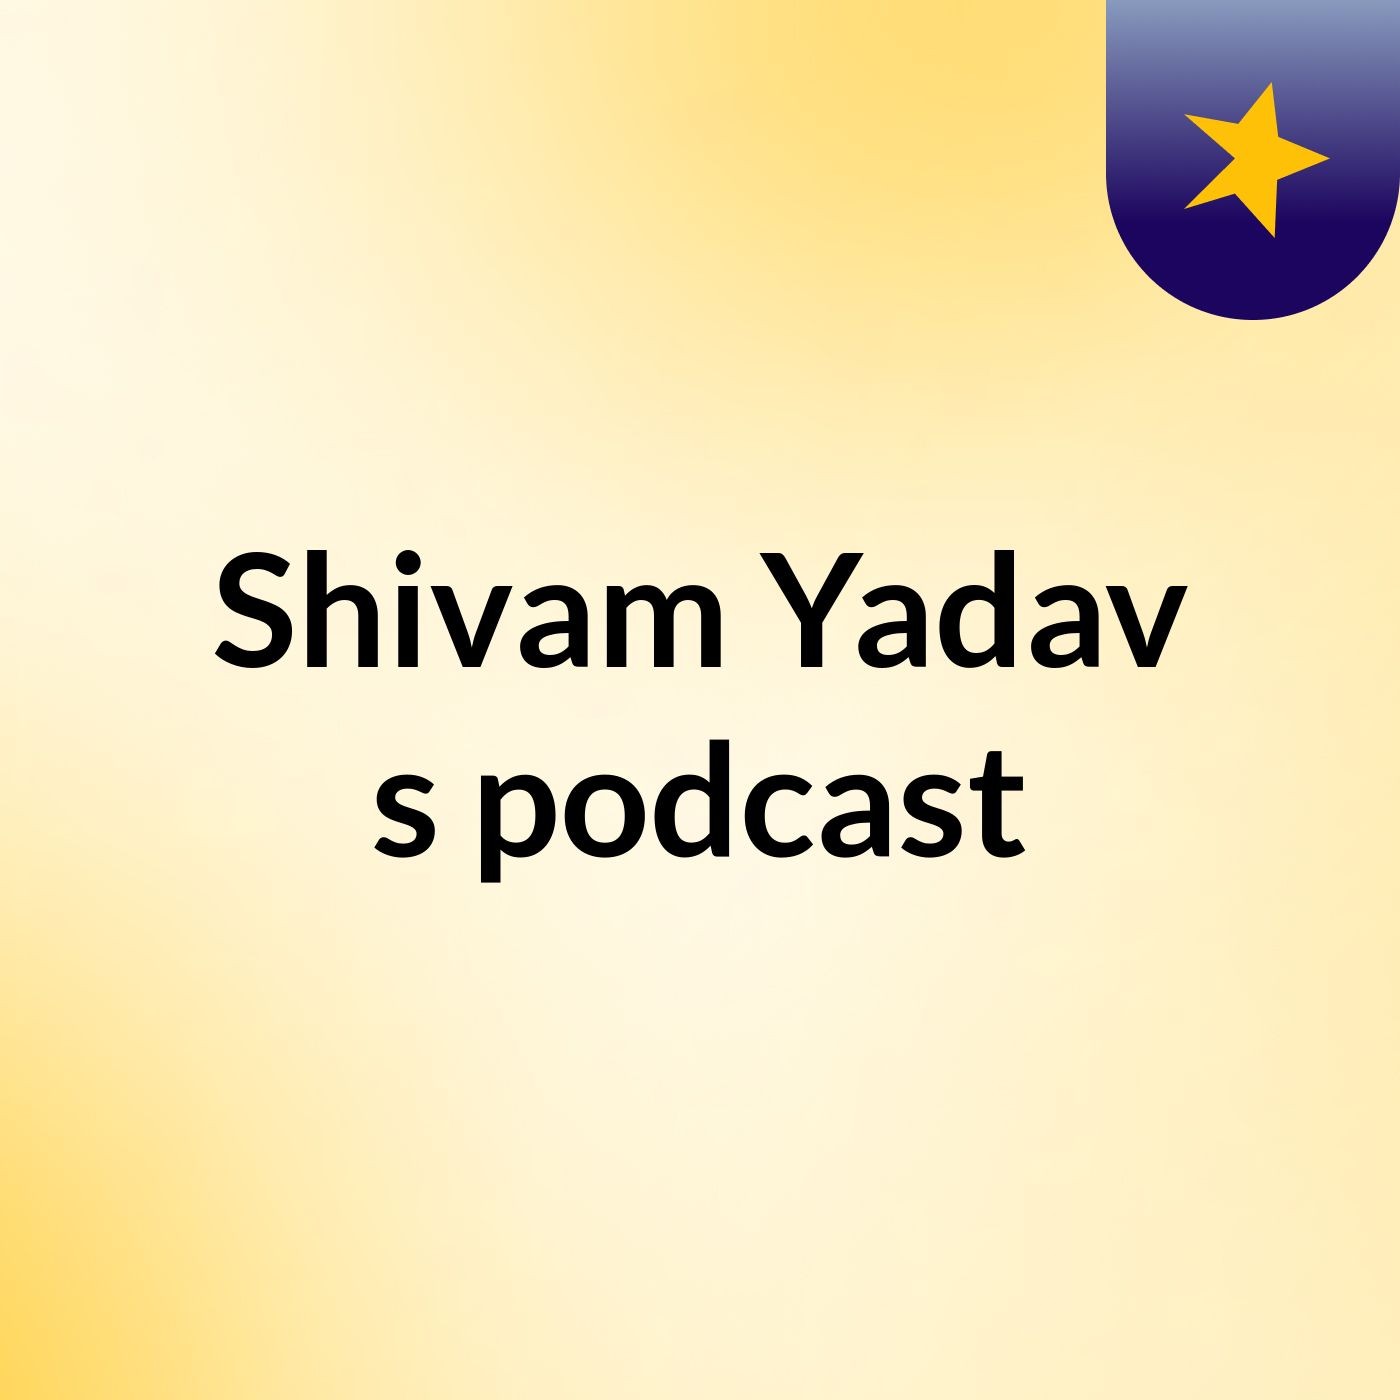 Episode 10 - Shivam Yadav's podcast